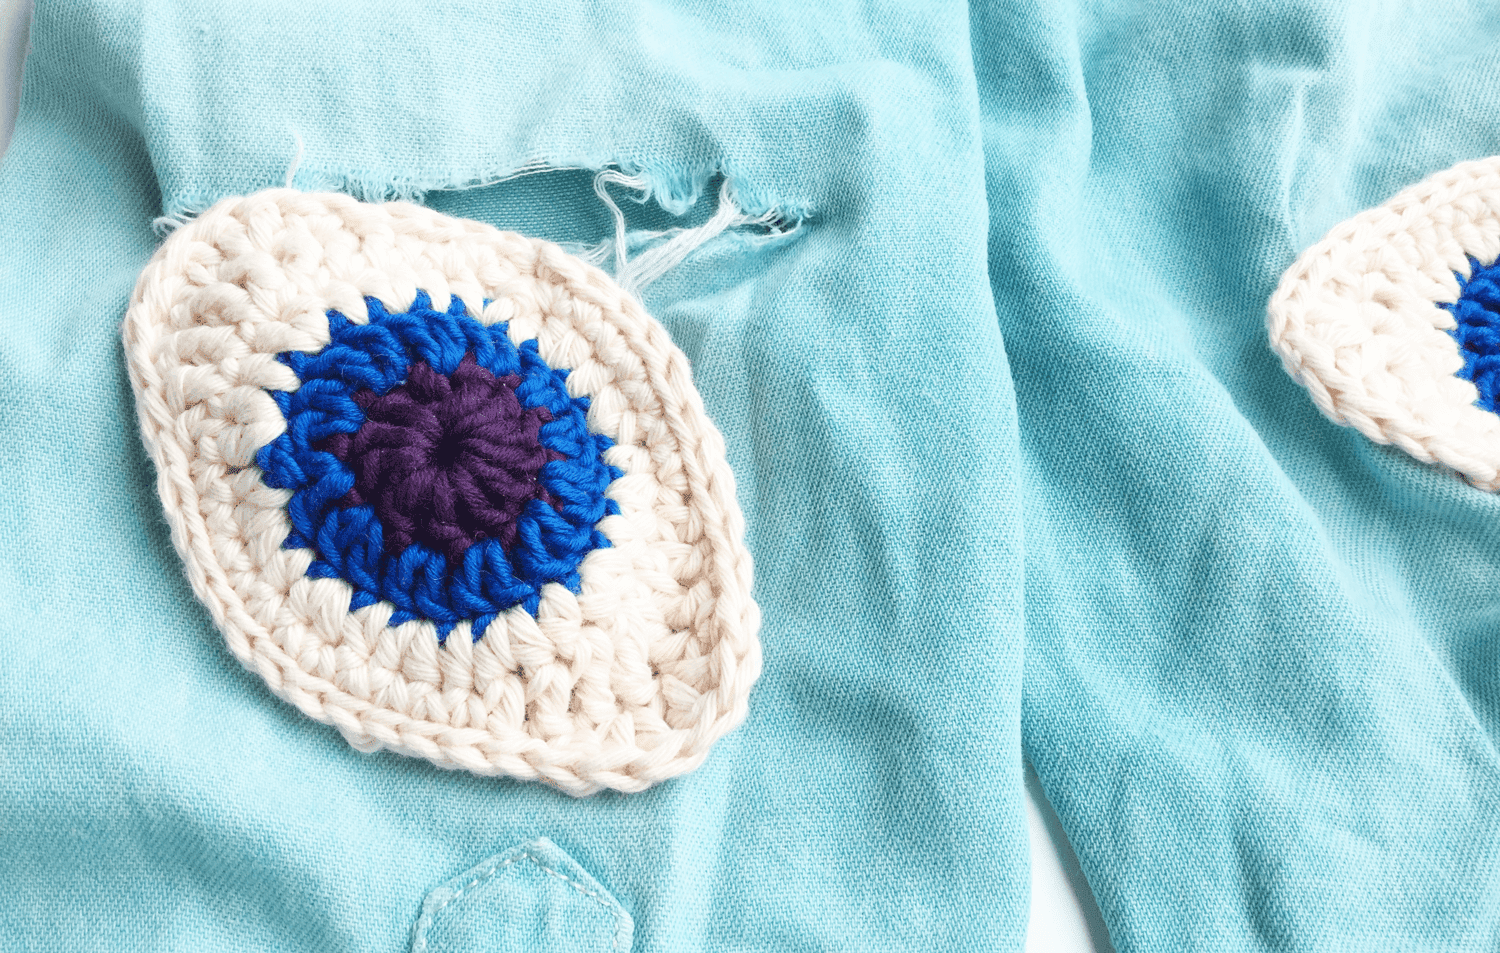 crochet eye applique sewing